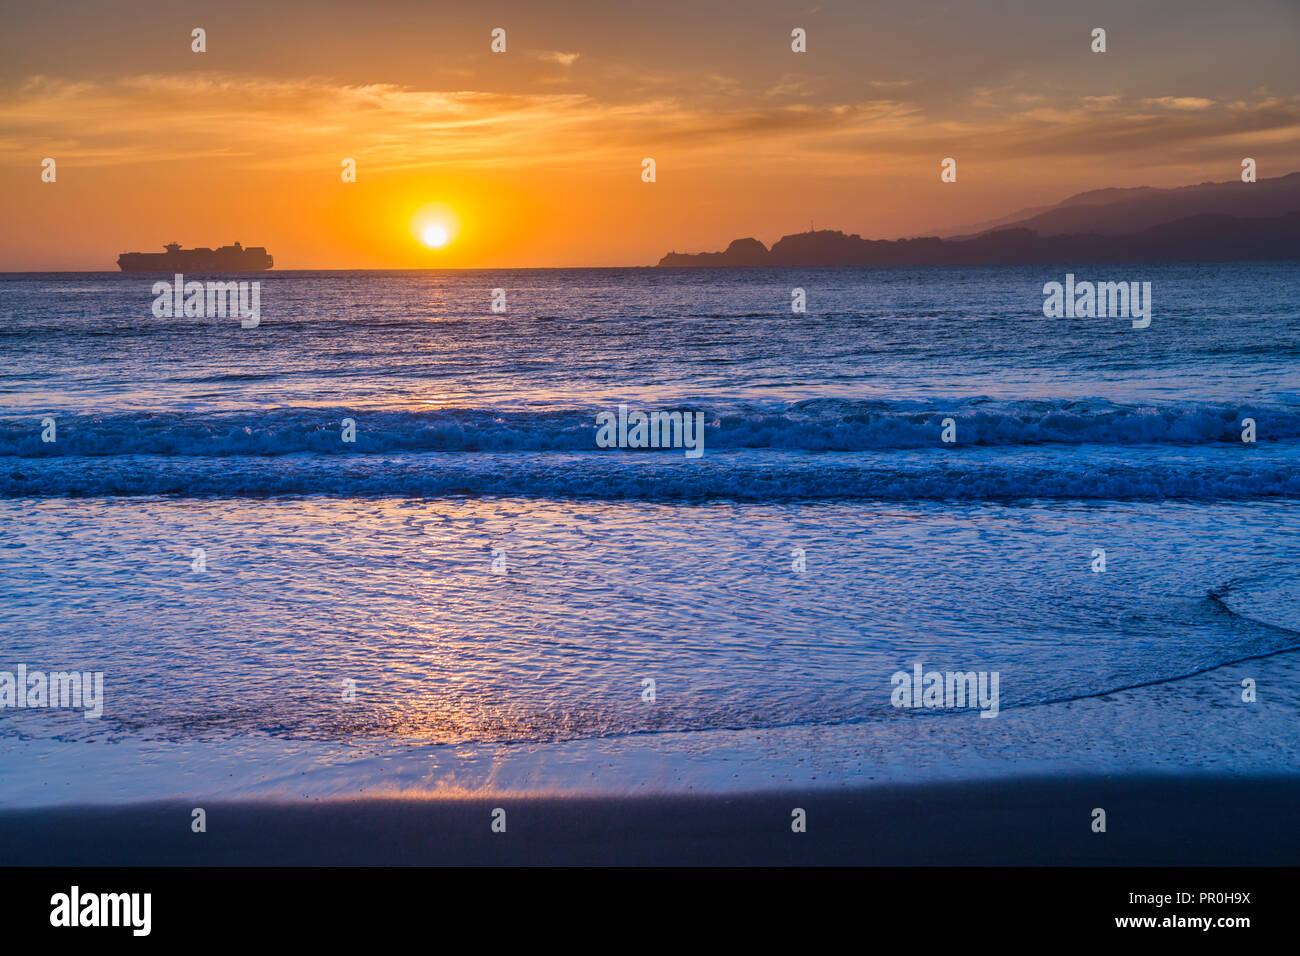 Sonnenuntergang von Baker Beach mit Blick auf den Pazifischen Ozean bei Dämmerung, South Bay, San Francisco, Kalifornien, Vereinigte Staaten von Amerika, Nordamerika Stockfoto